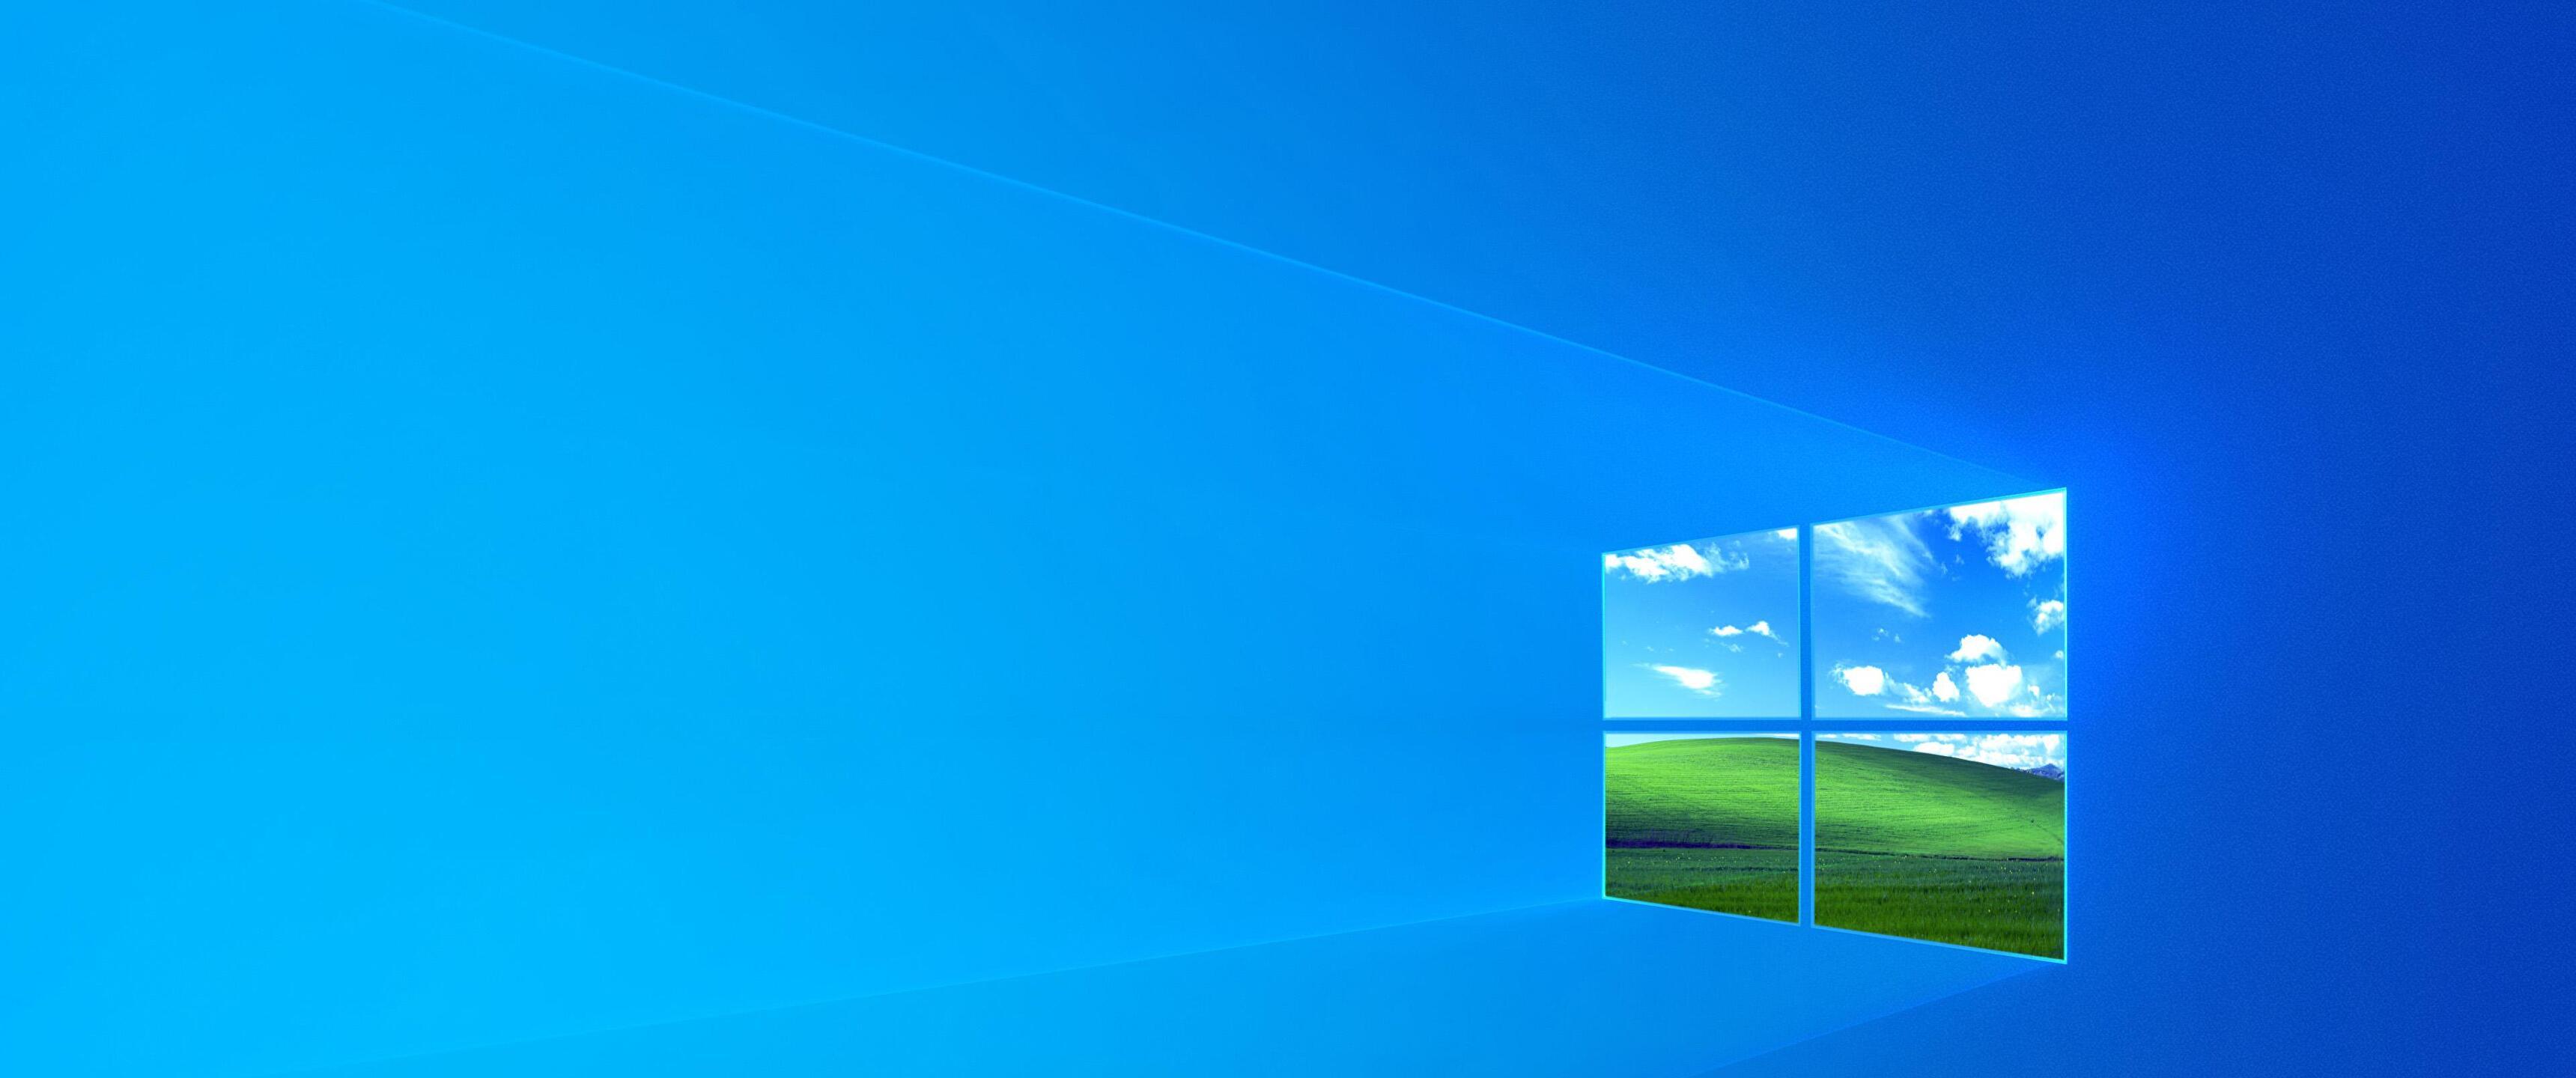 Hãy khám phá vẻ đẹp của hình nền mặc định của Windows 10, nơi mà thiết kế và màu sắc tinh tế kết hợp để tạo nên một không gian làm việc hoàn hảo cho bạn. Thật đáng yêu và đáng để sử dụng!